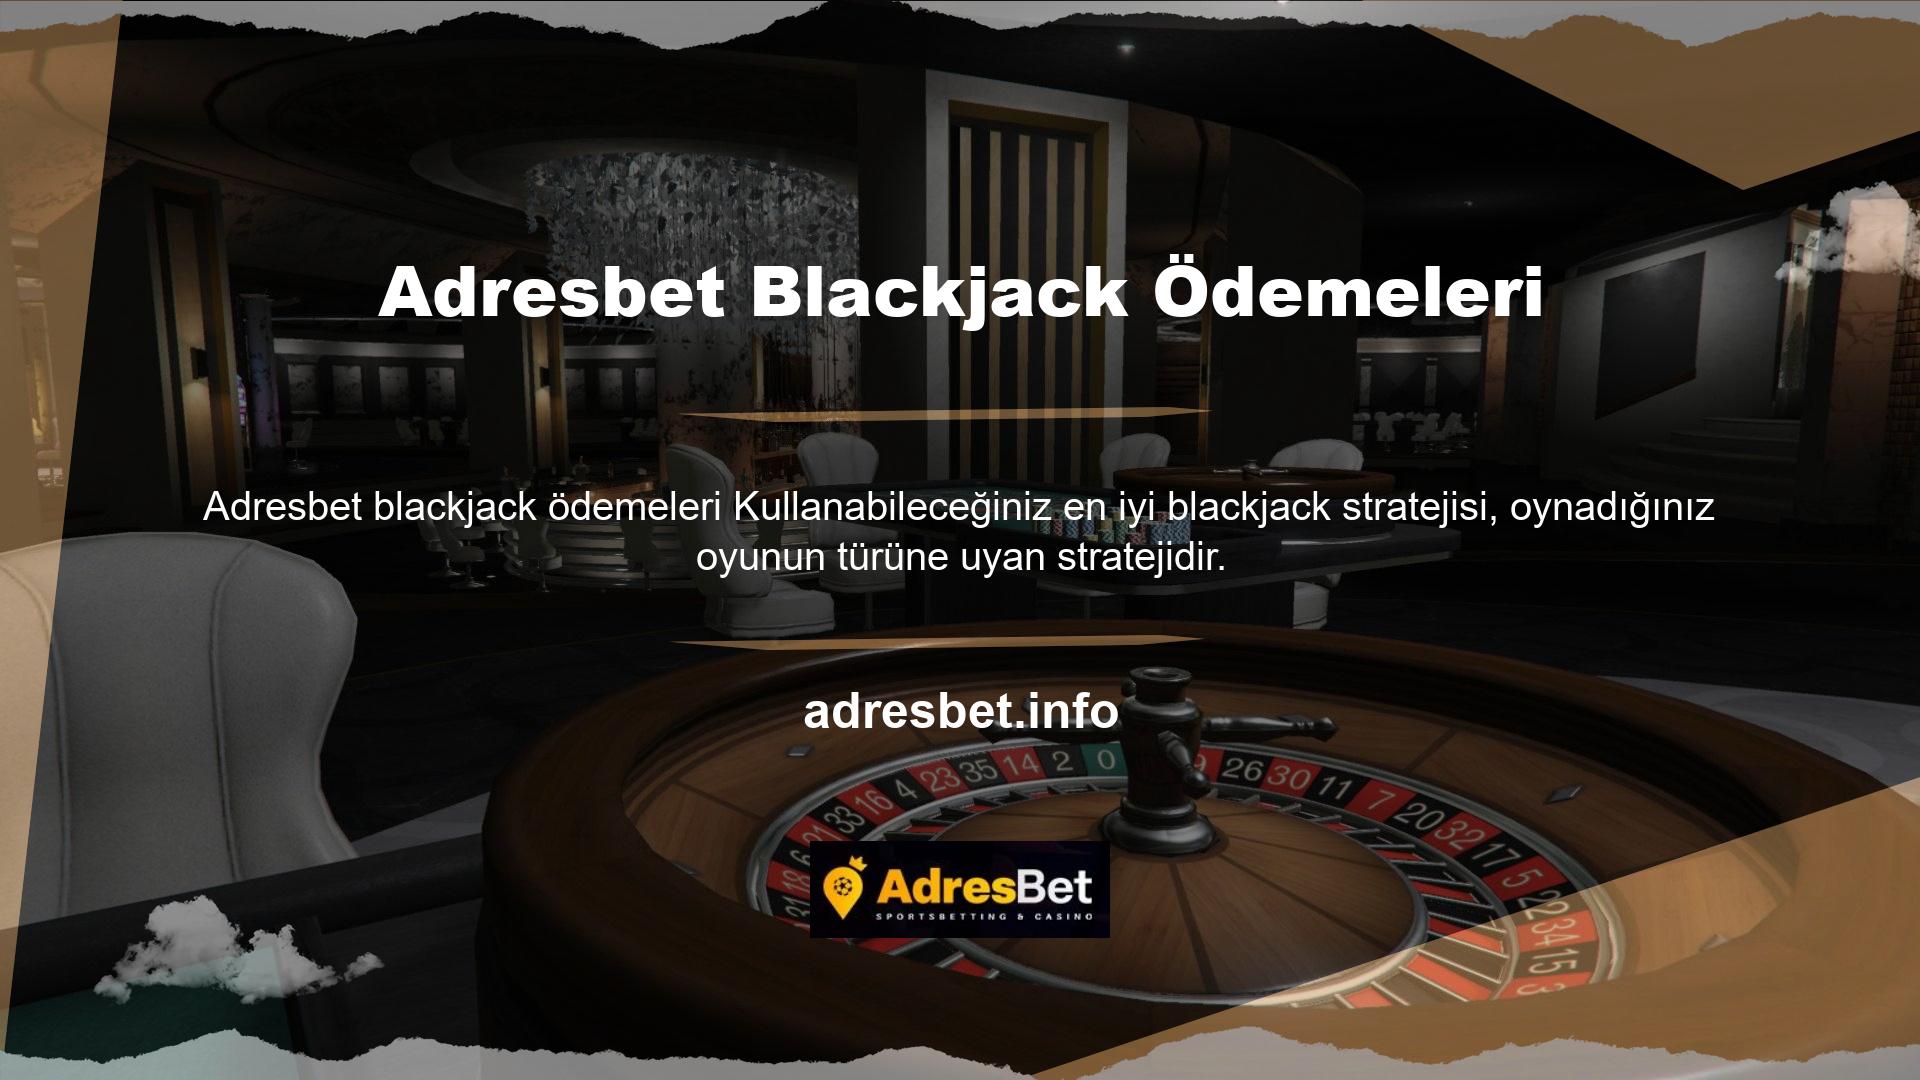 Oynadığınız belirli blackjack türü için tasarlanmış oyun planlarını kullanmakla ilgileniyorsanız